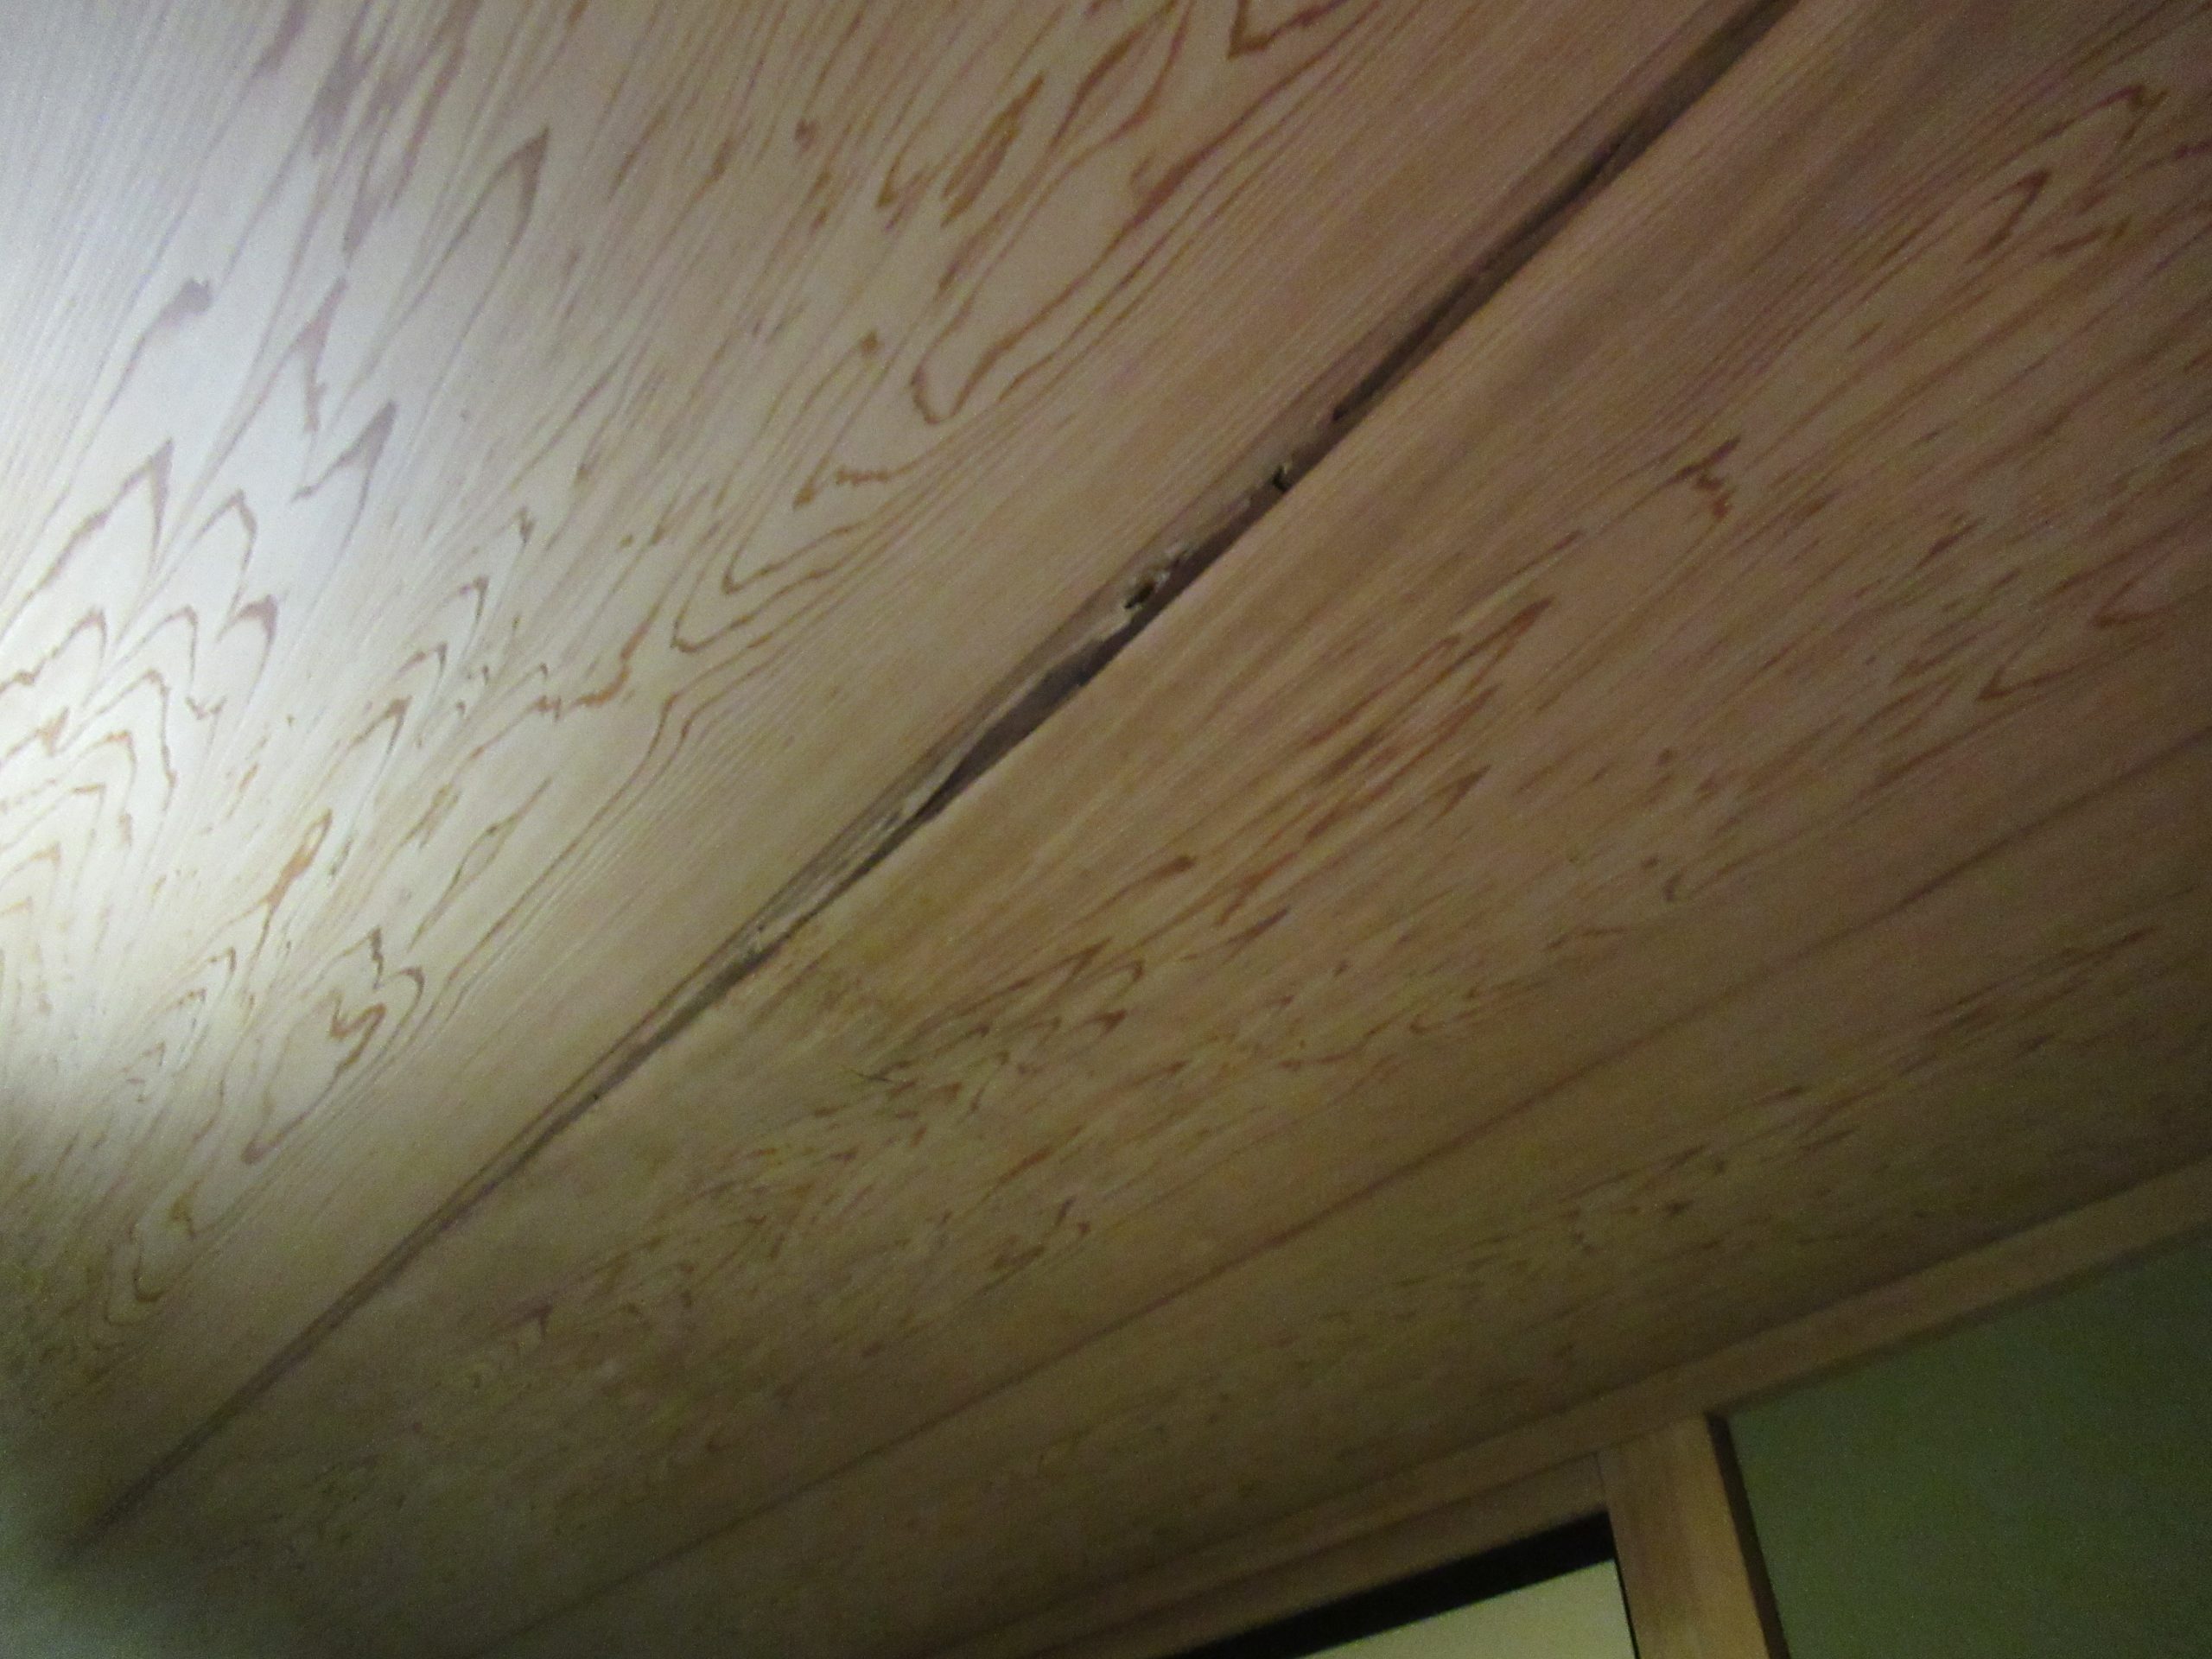 甲府市で雨漏れが発生し、原因は屋根漆喰の劣化と判明しました！